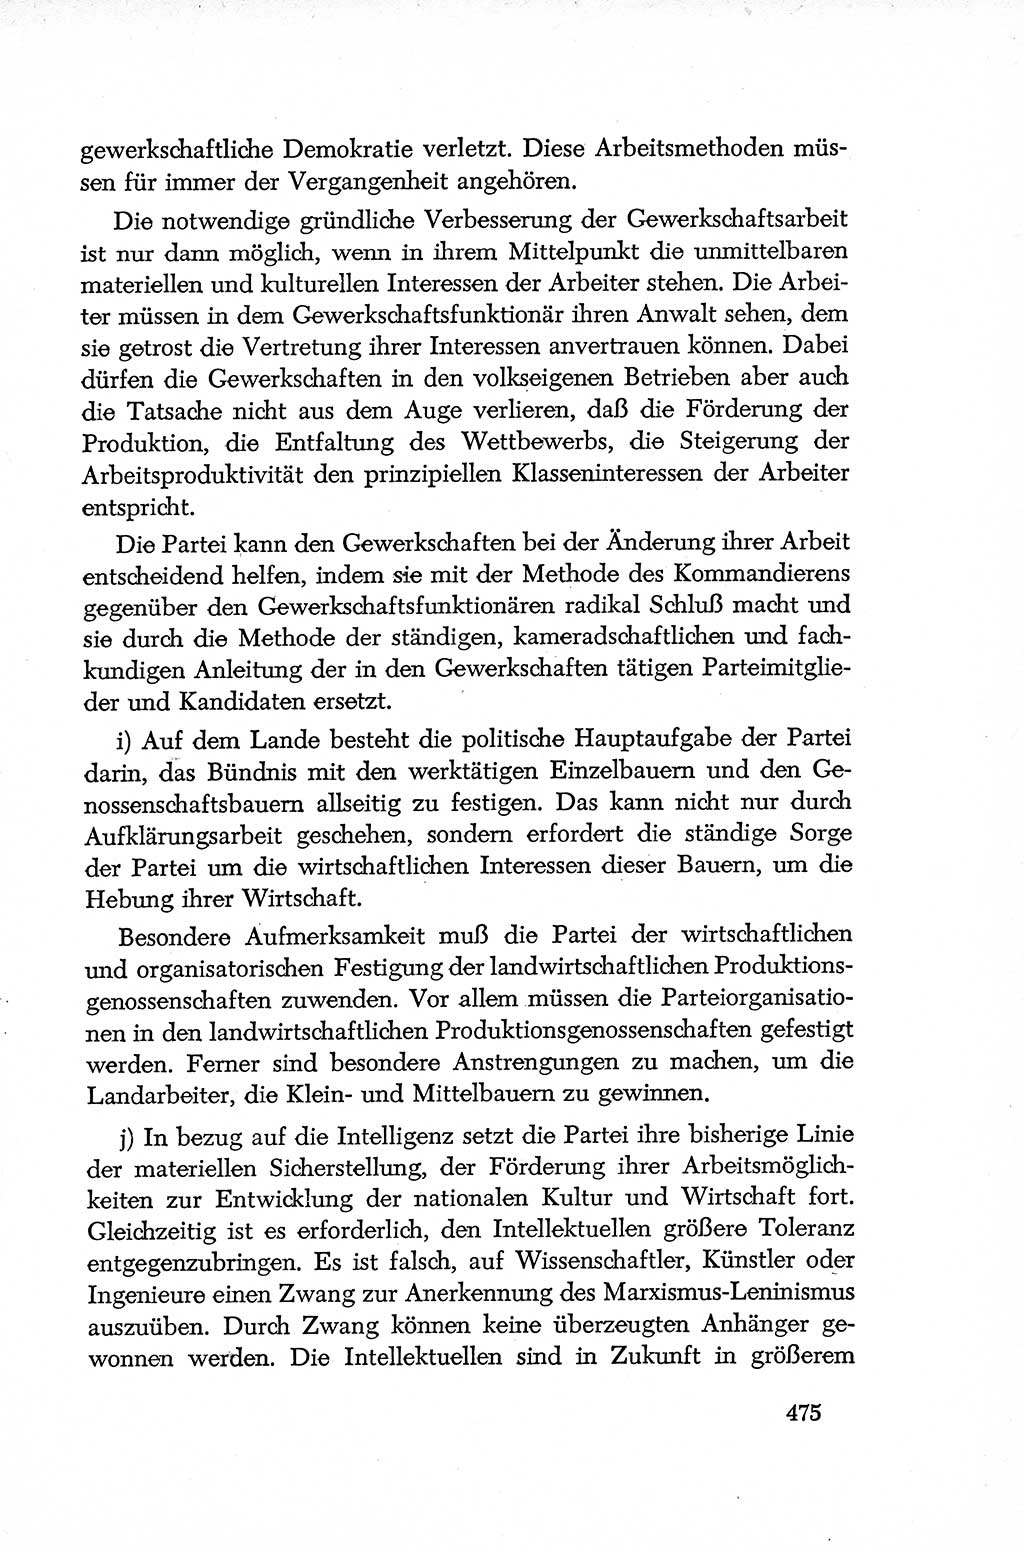 Dokumente der Sozialistischen Einheitspartei Deutschlands (SED) [Deutsche Demokratische Republik (DDR)] 1952-1953, Seite 475 (Dok. SED DDR 1952-1953, S. 475)